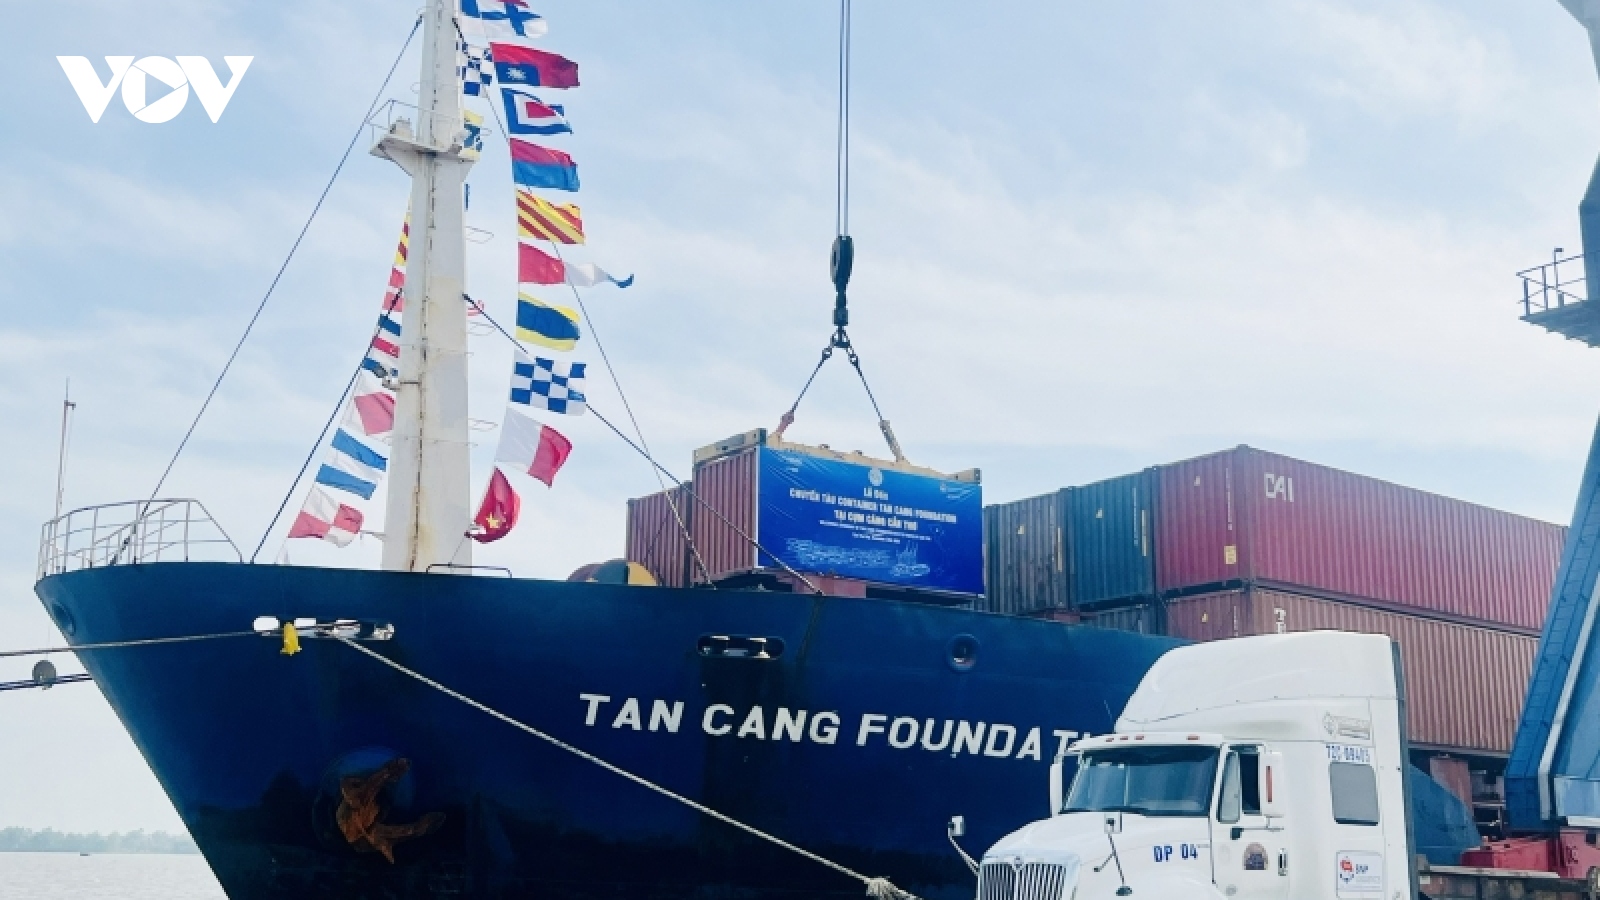 Tái khởi động chuyến tàu Container vào cụm Cảng Cần Thơ